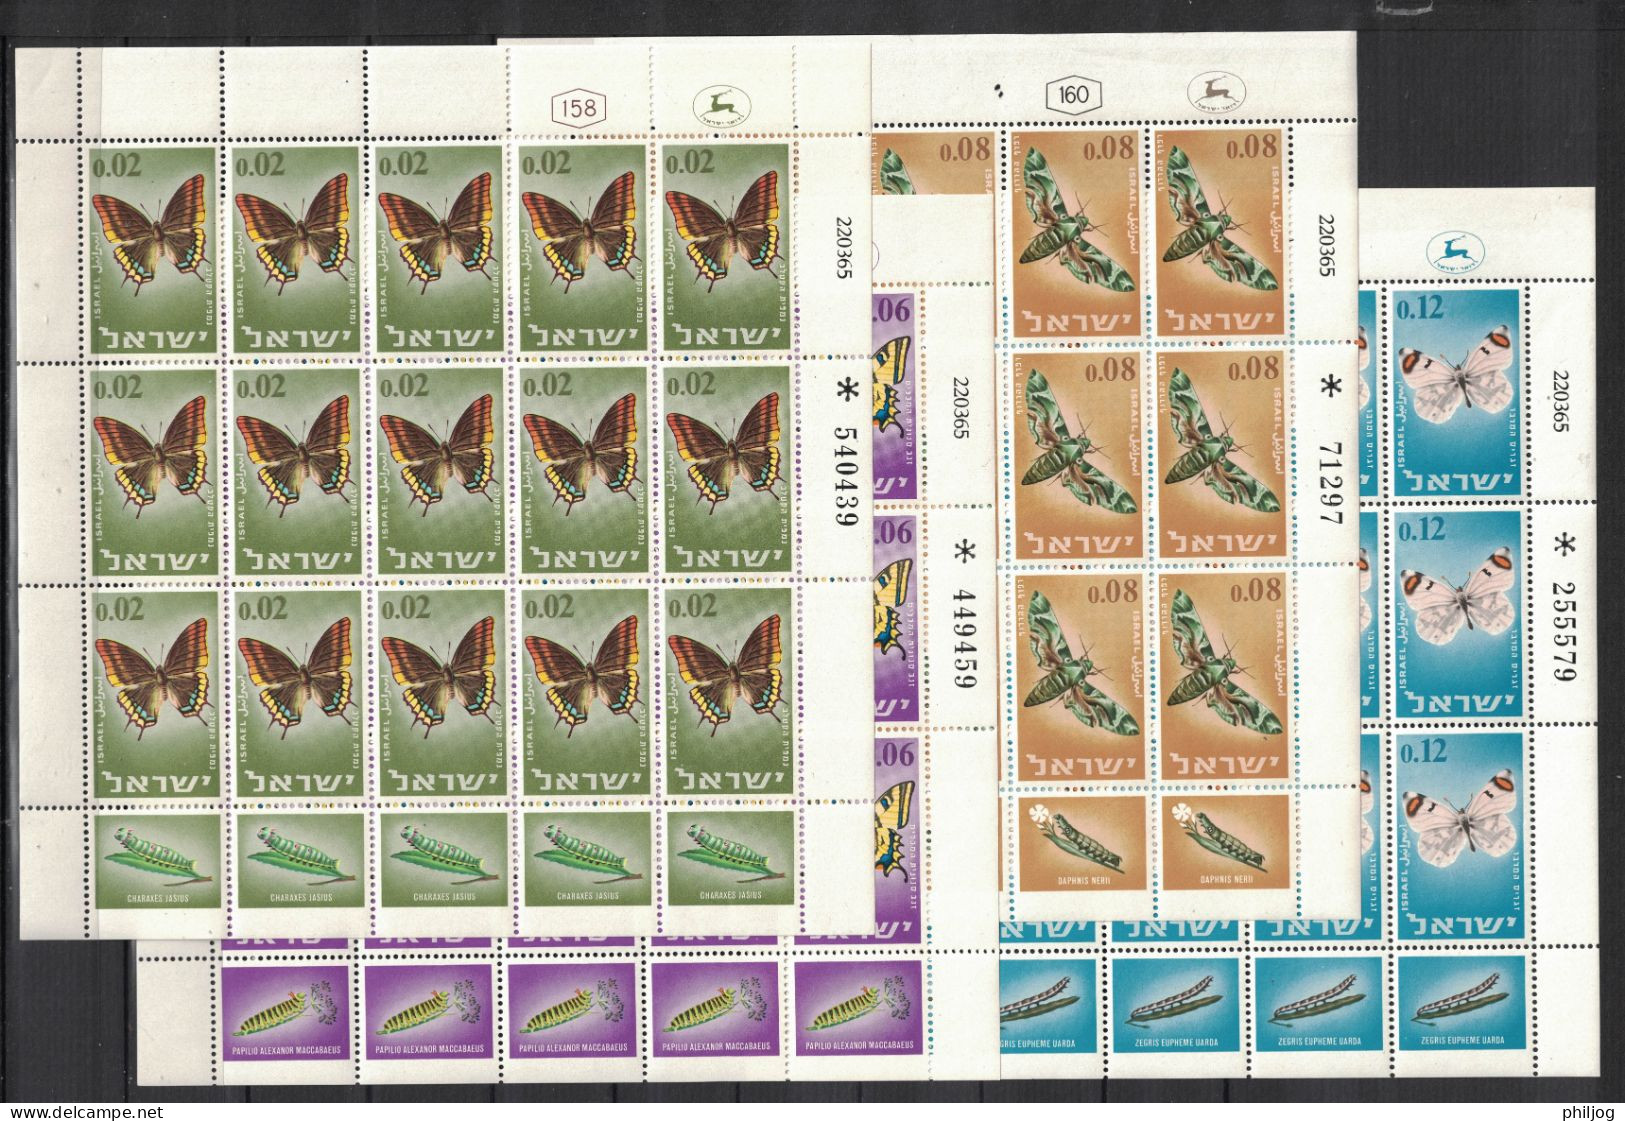 Israël 1965 - Yvert 300-303, Scott#304-307, Bale 323-326 - Feuille Complète Neuve SANS Charnière - Papillons - Ungebraucht (mit Tabs)